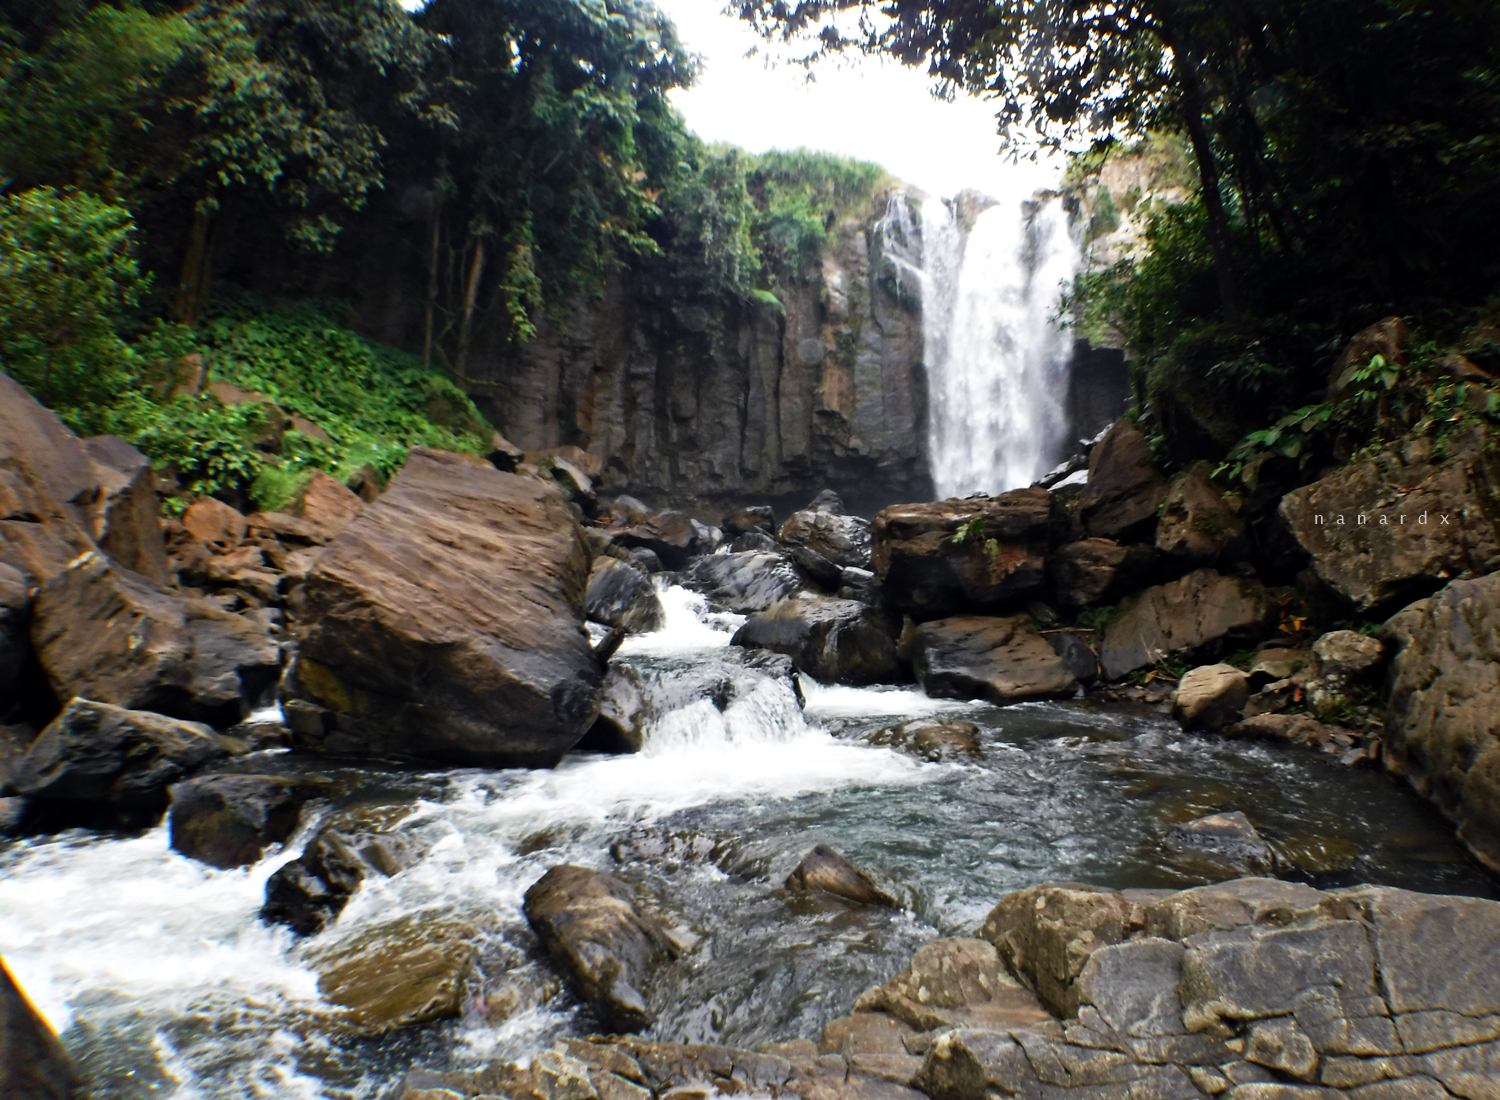 Breathtaking Ranao Pilayan Falls in Upi, Maguindanao